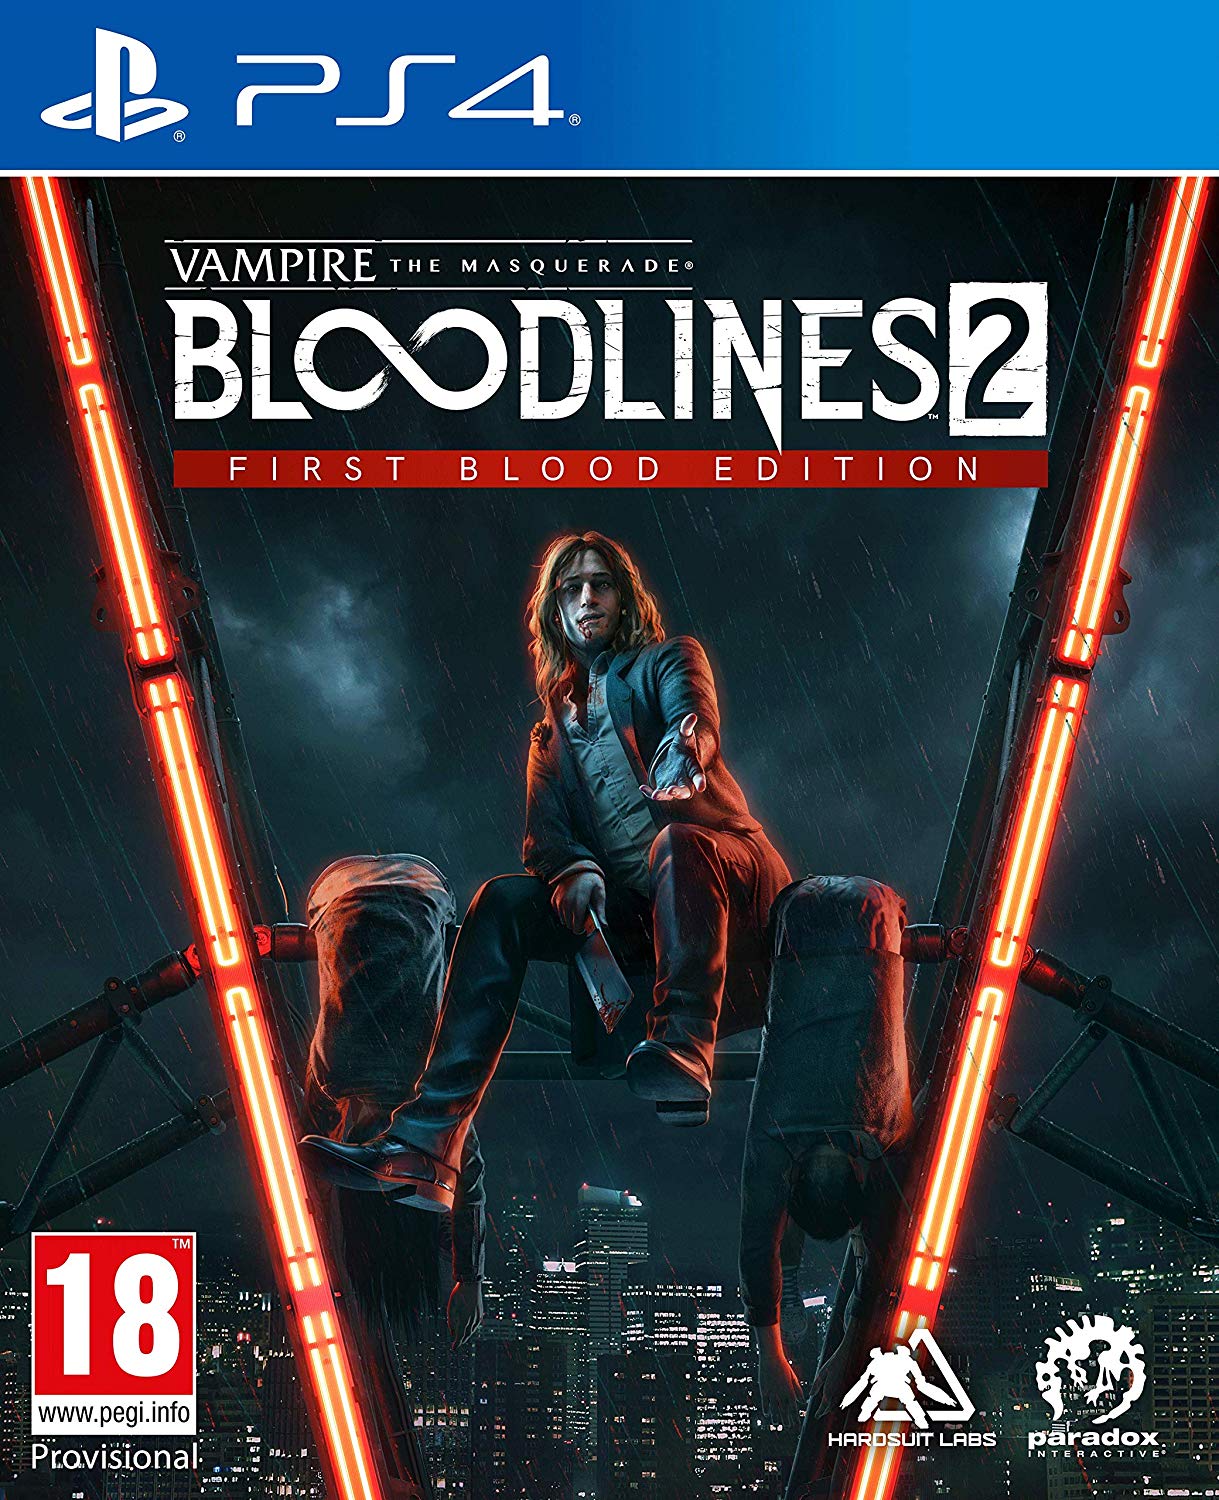 download vampire bloodlines 2 release date